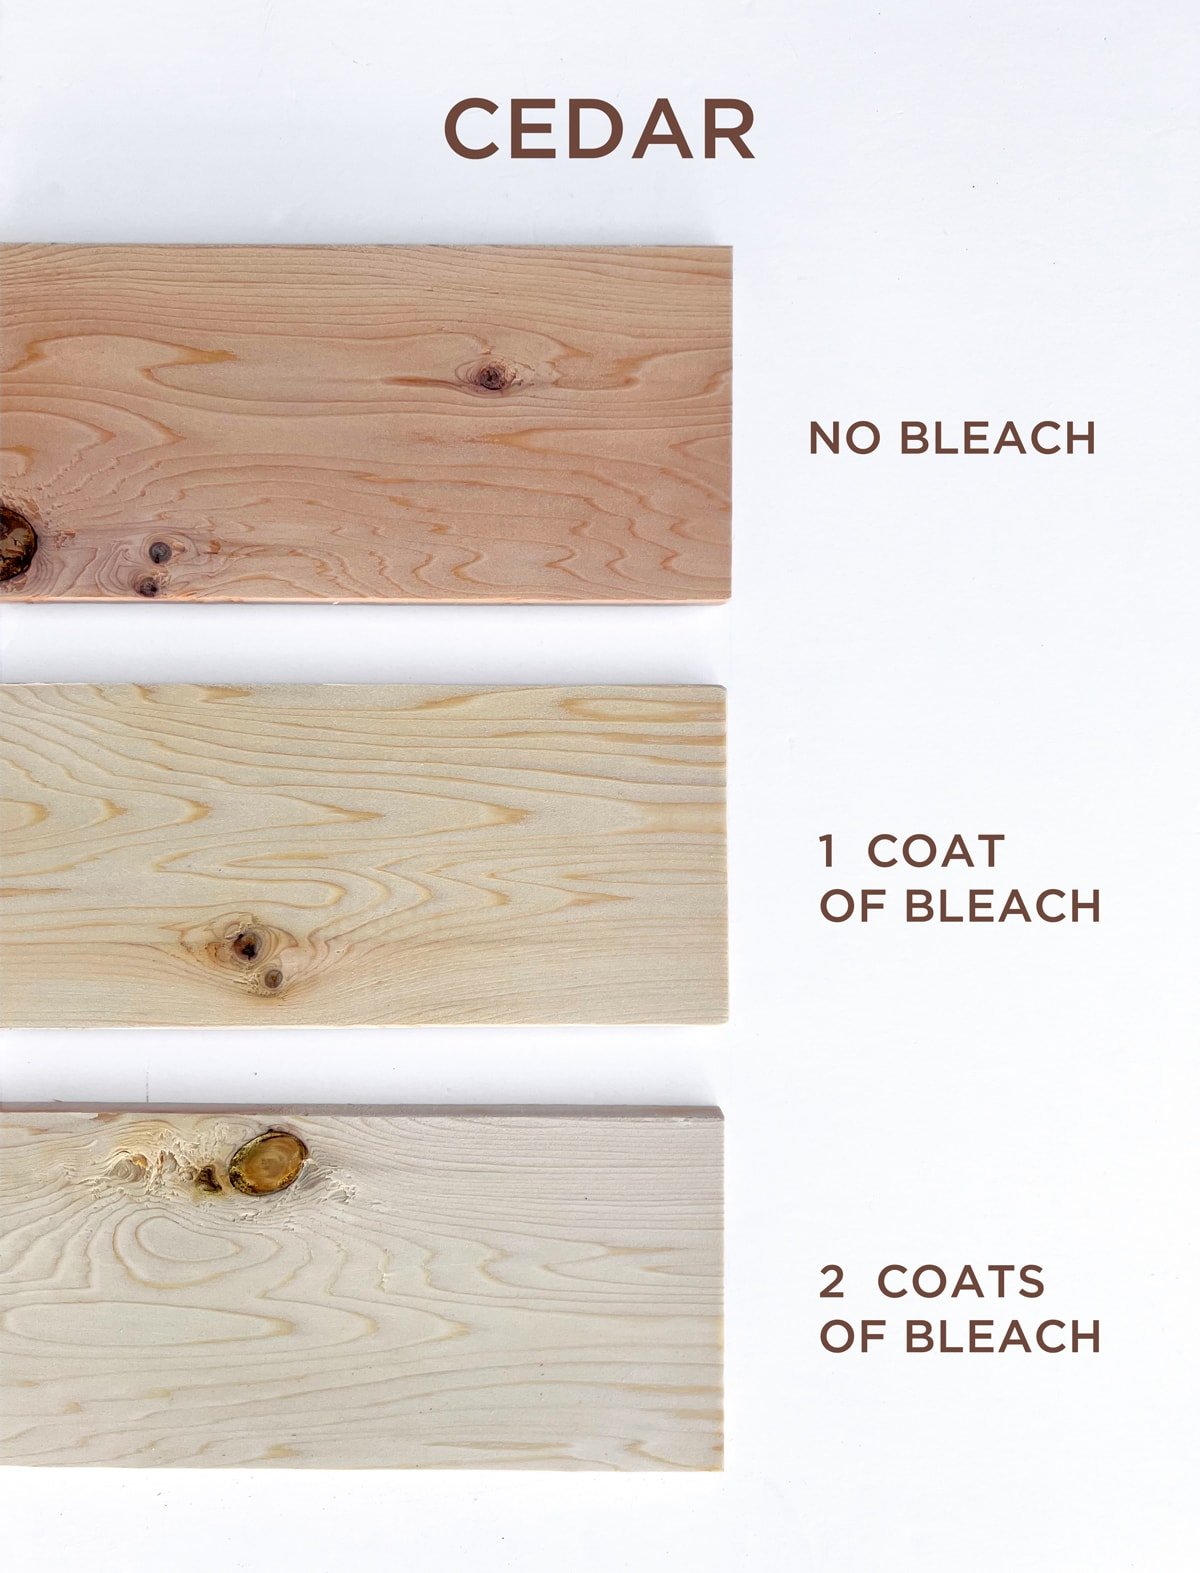 how to bleach cedar with wood bleach